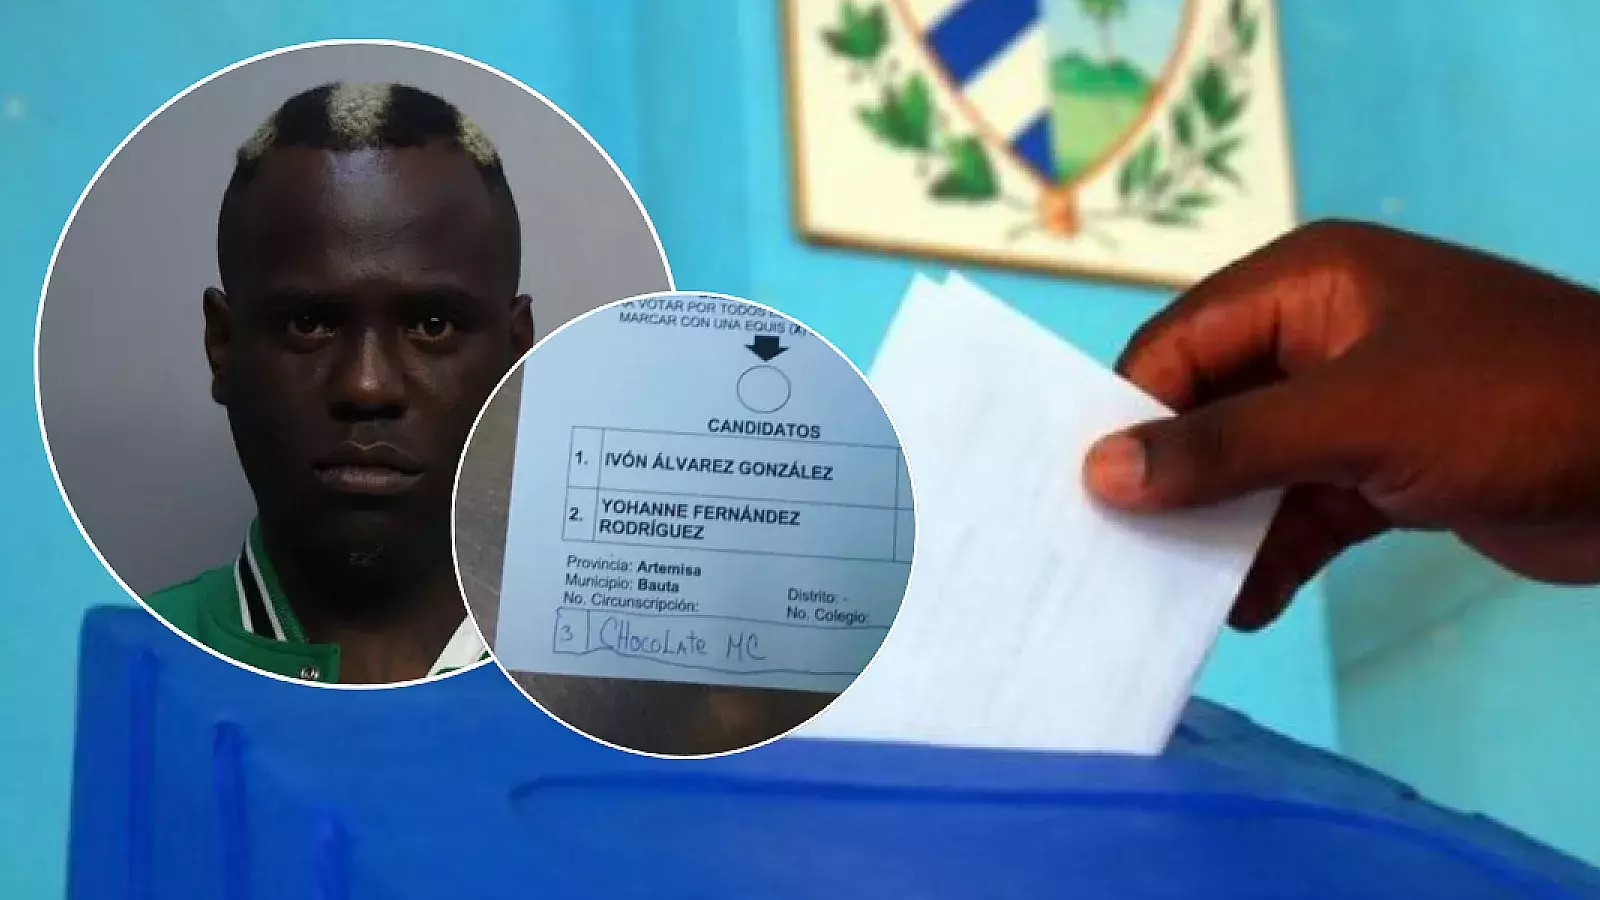 Chocolate MC dice que “votaron” por él en elecciones en Cuba: repartiría marihuana durante su “mandato”